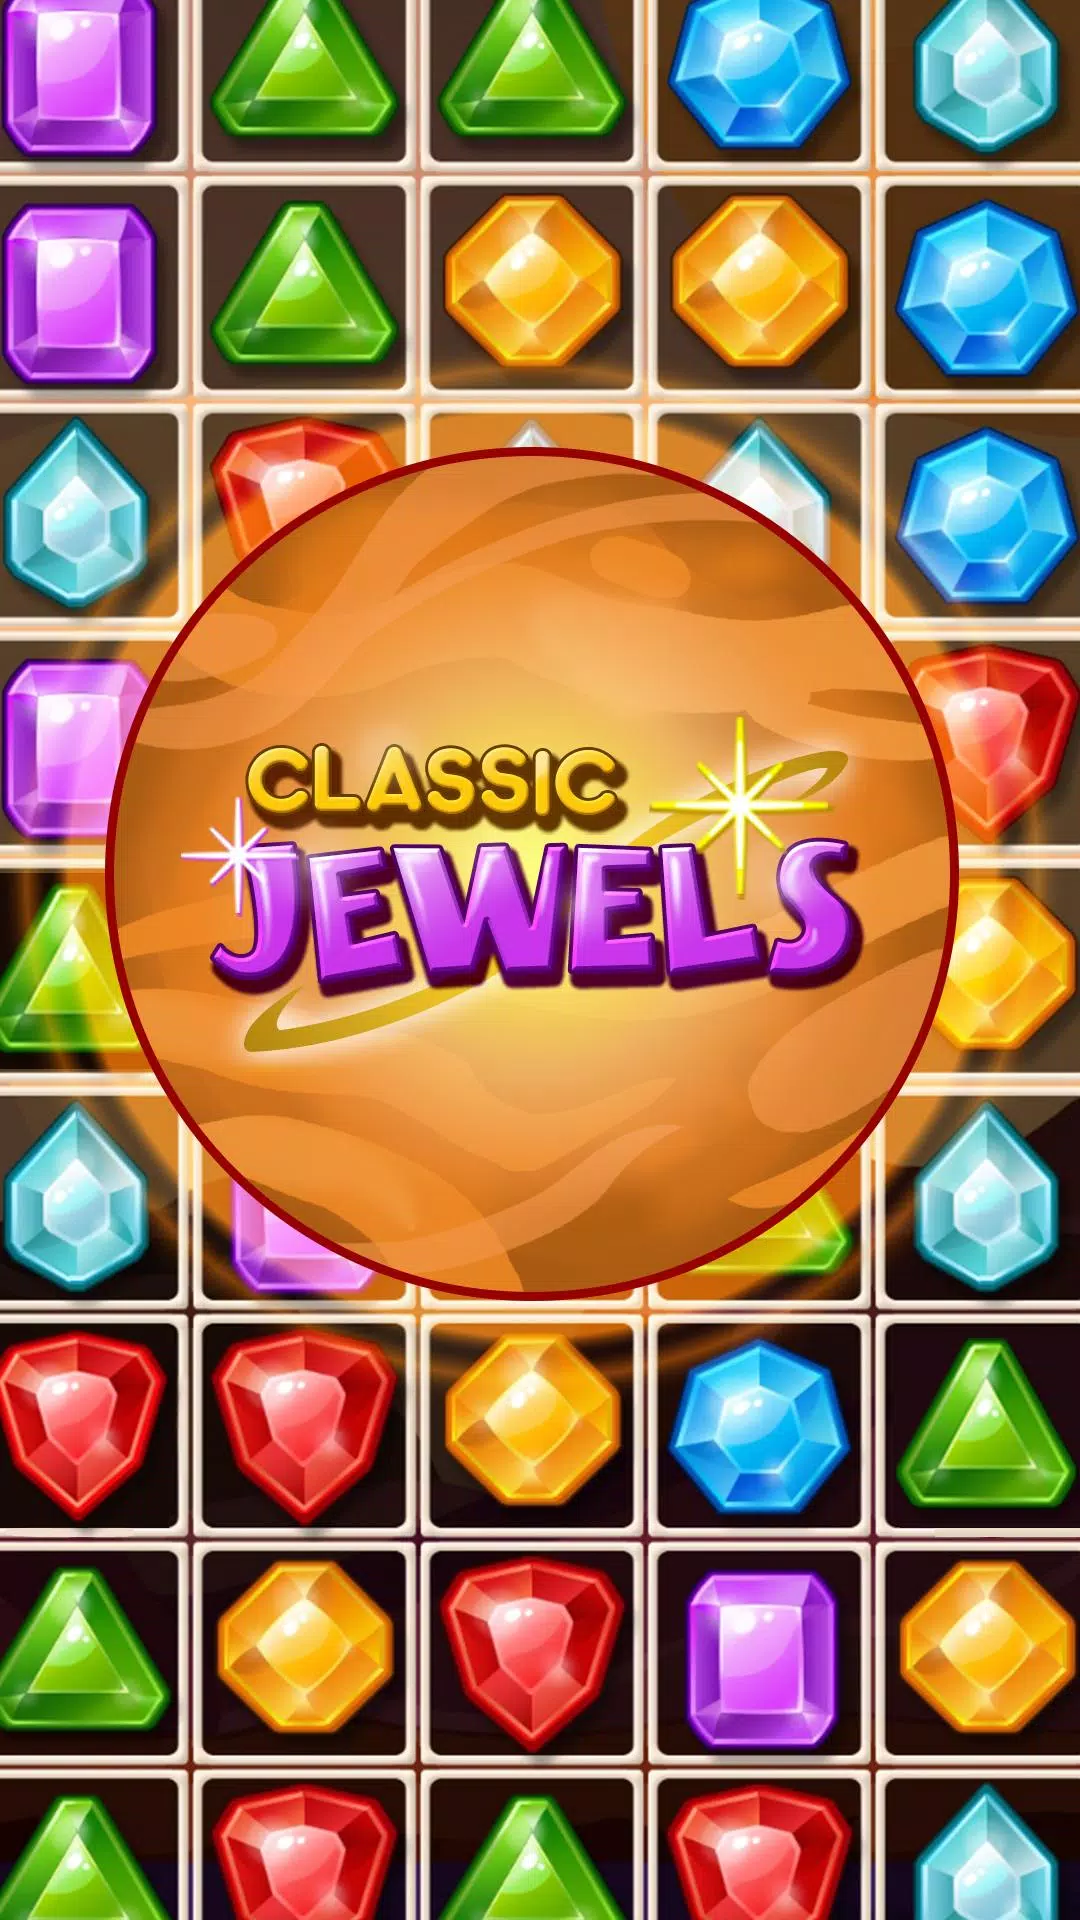 Juegos De Diamantes Con Gemas Y Joyas for Android - APK Download